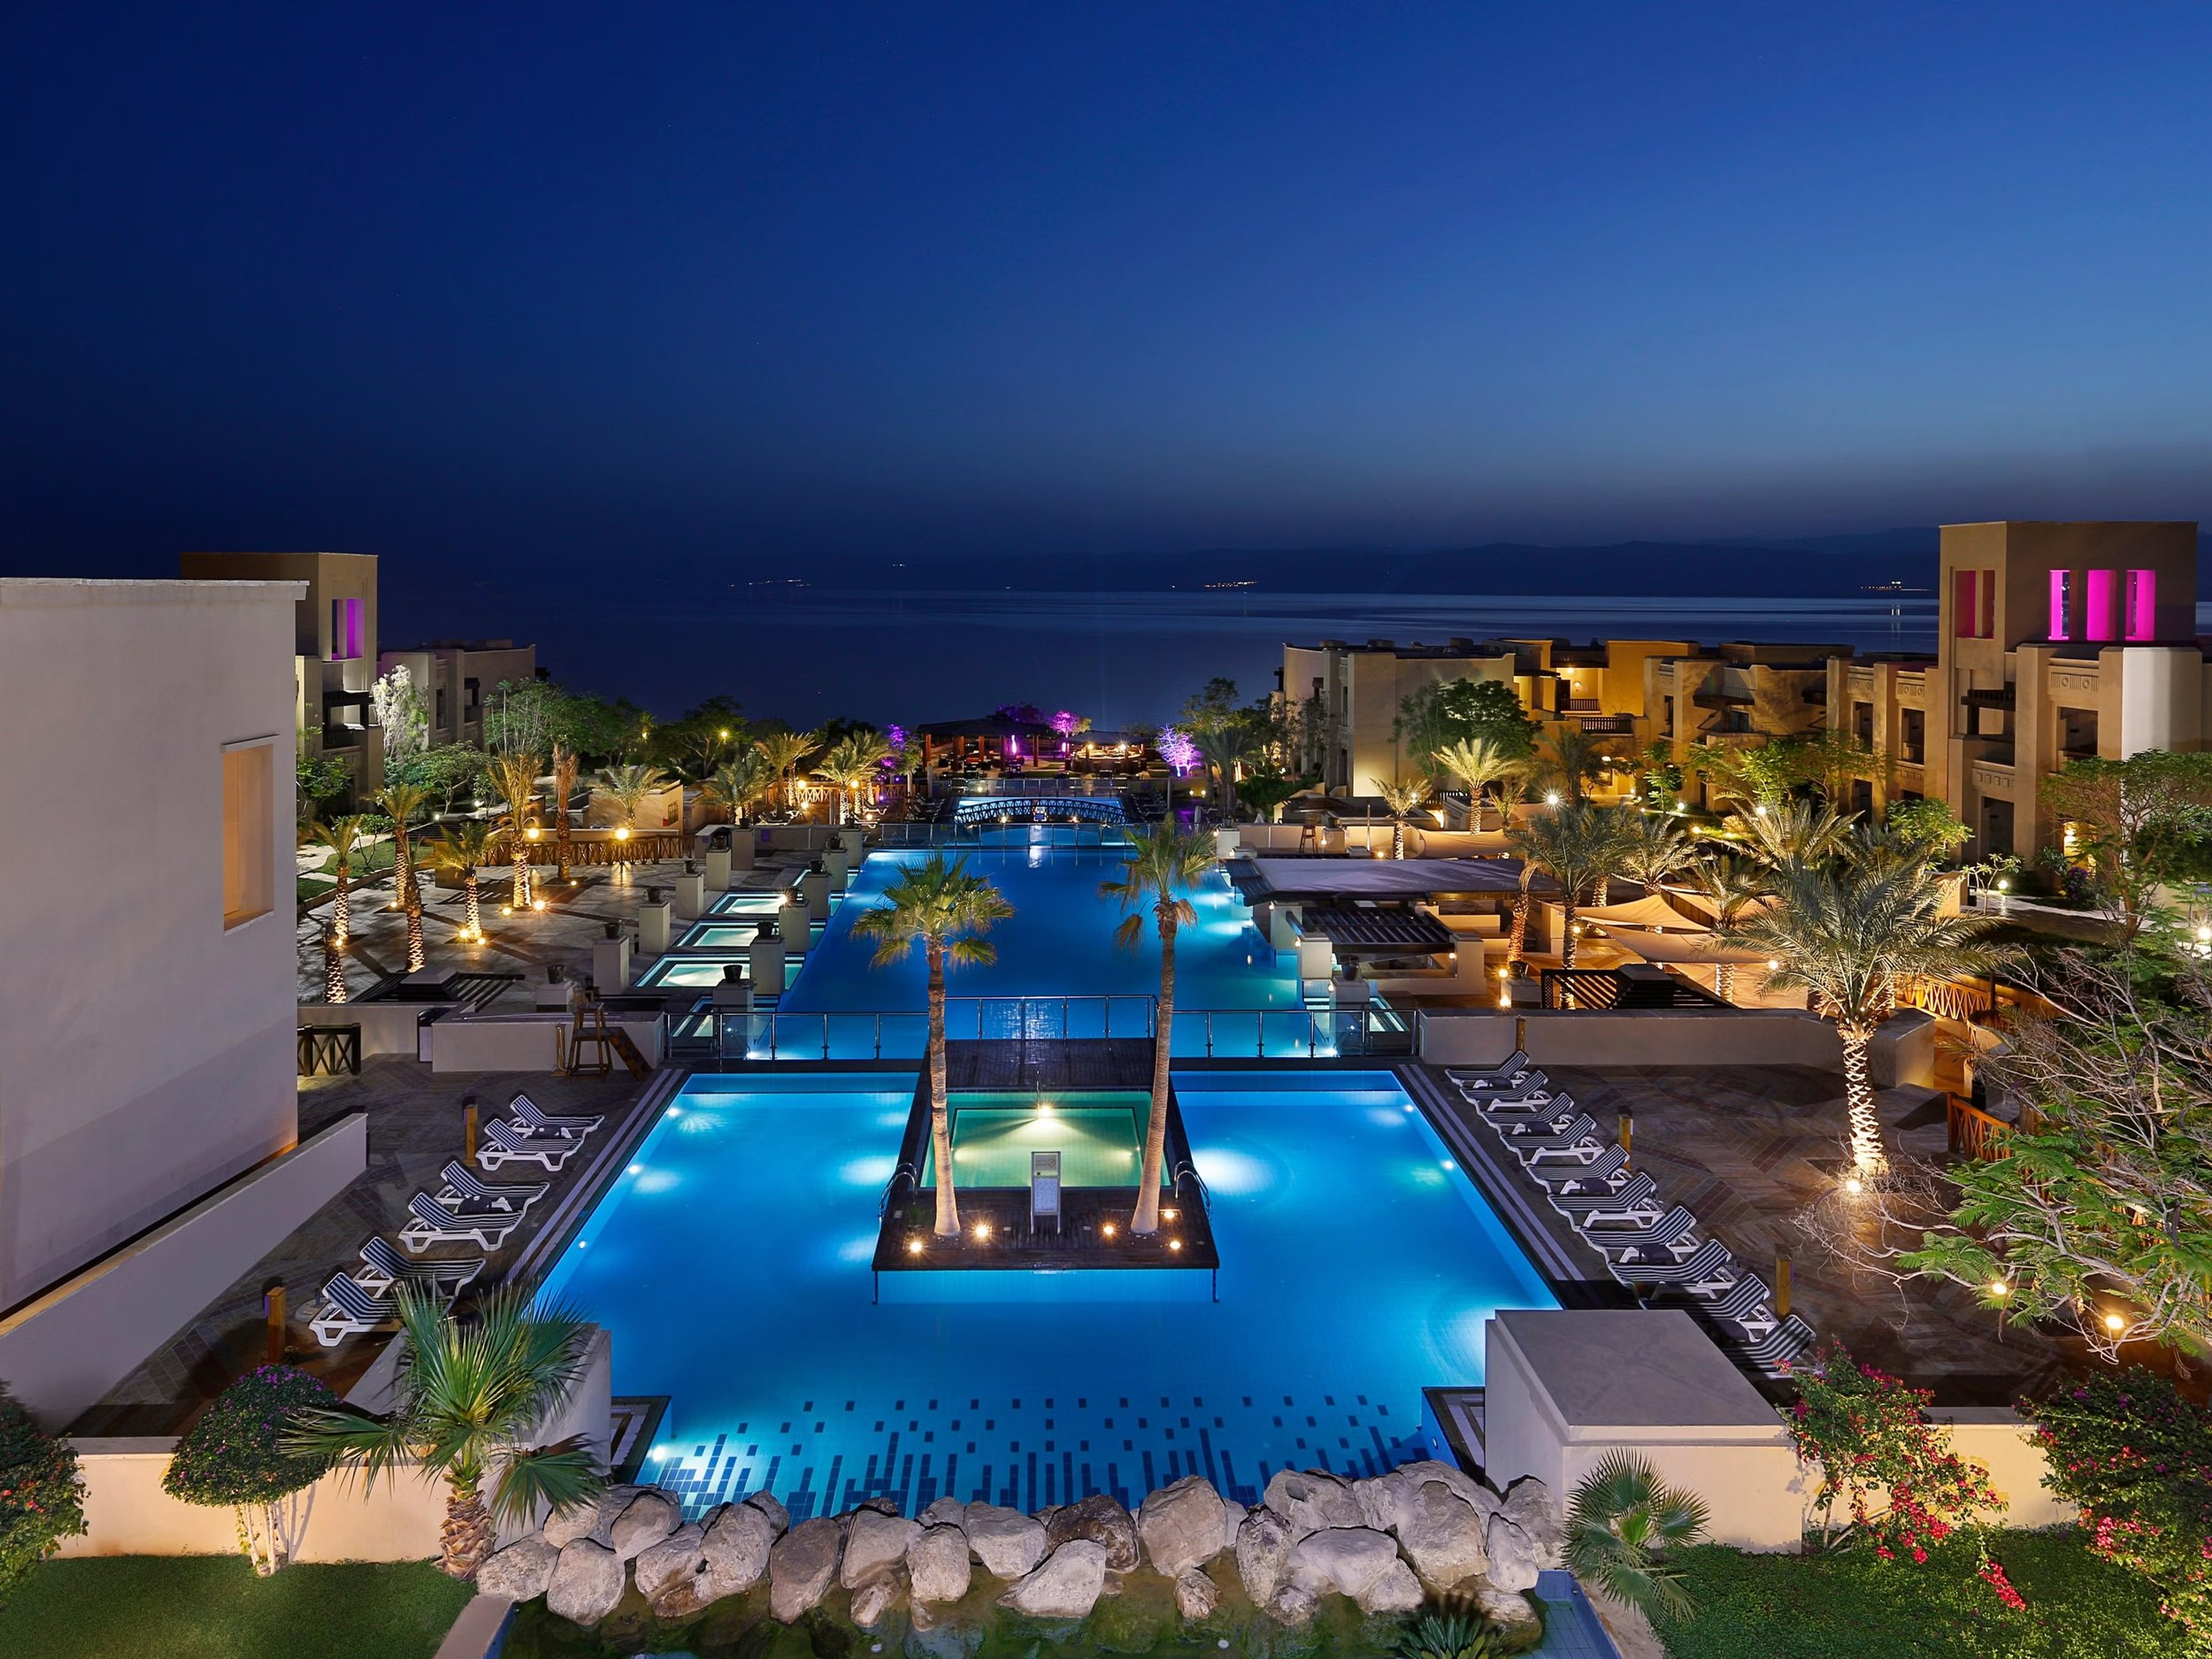 Holiday Inn Dead Sea Resort